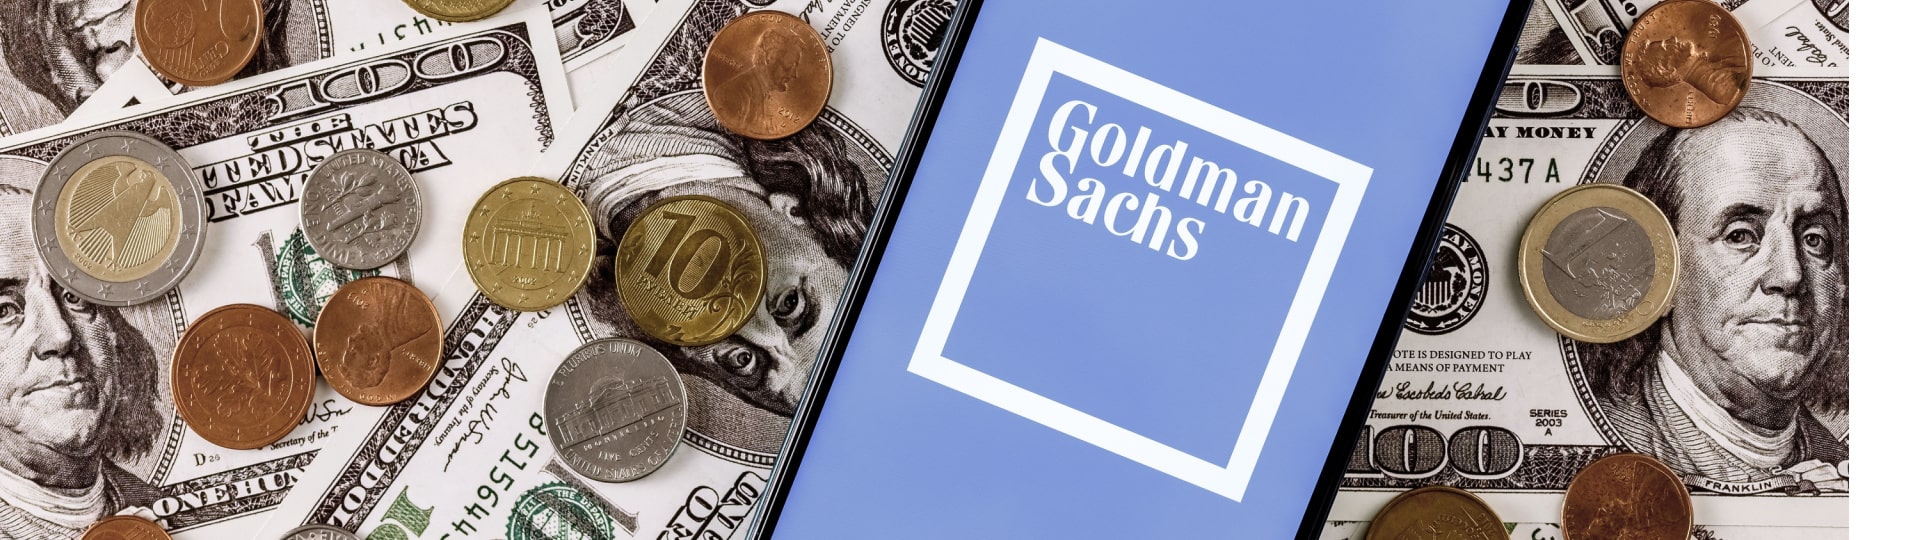 Goldman Sachs ve čtvrtletí zvýšil zisk